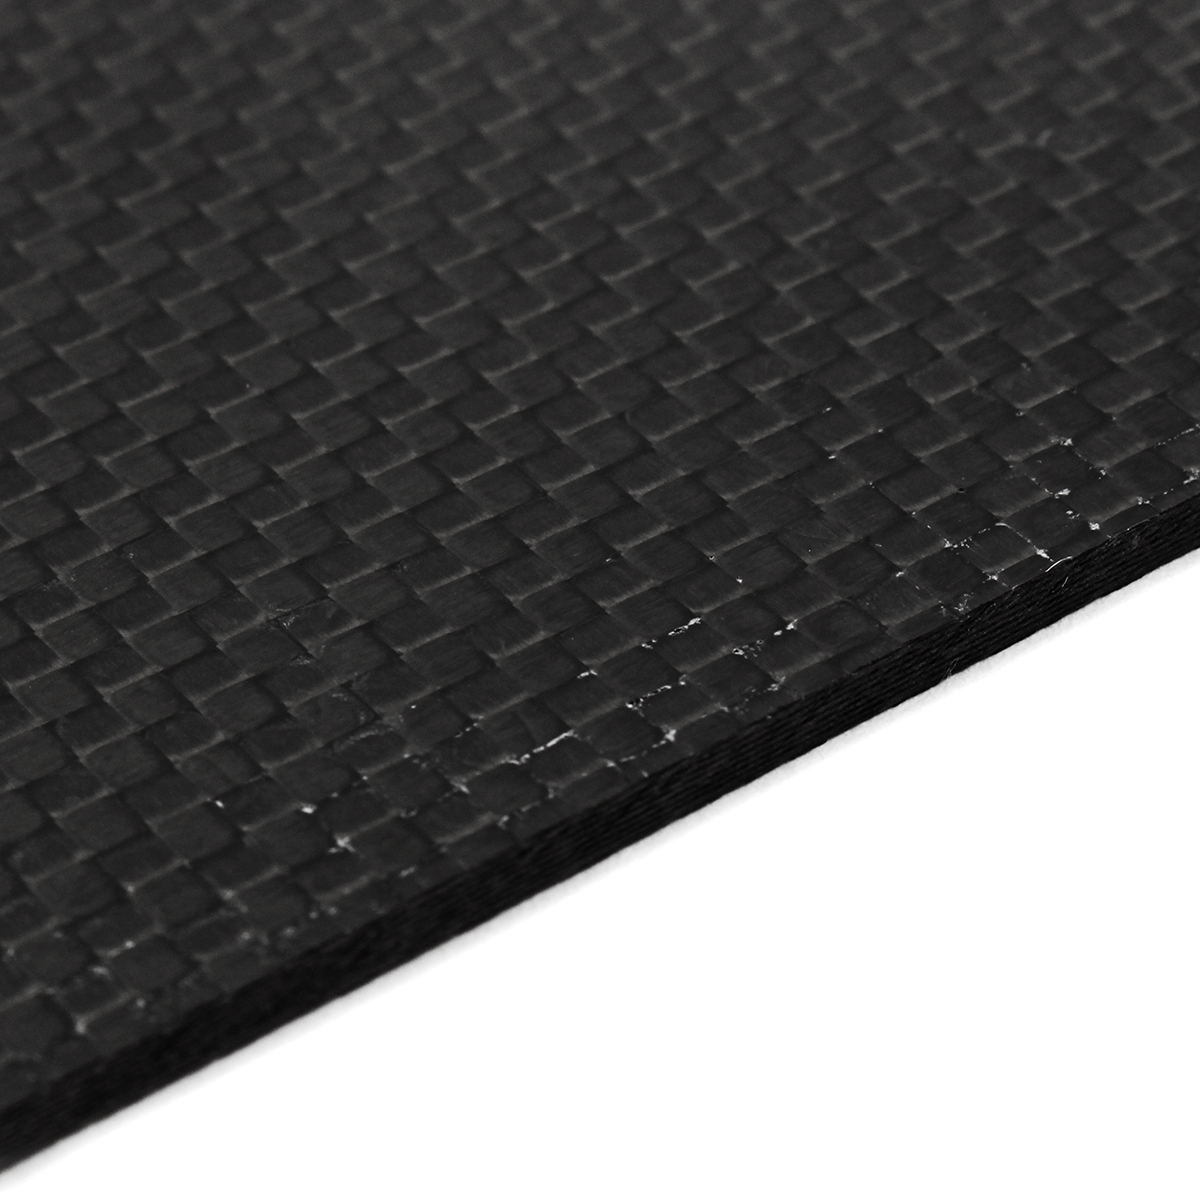 200x250x05-2mm-Plain-Weave-3K-Carbon-Fiber-Plate-Panel-Sheet-Tabby-Matt-Surface-Board-1332224-6